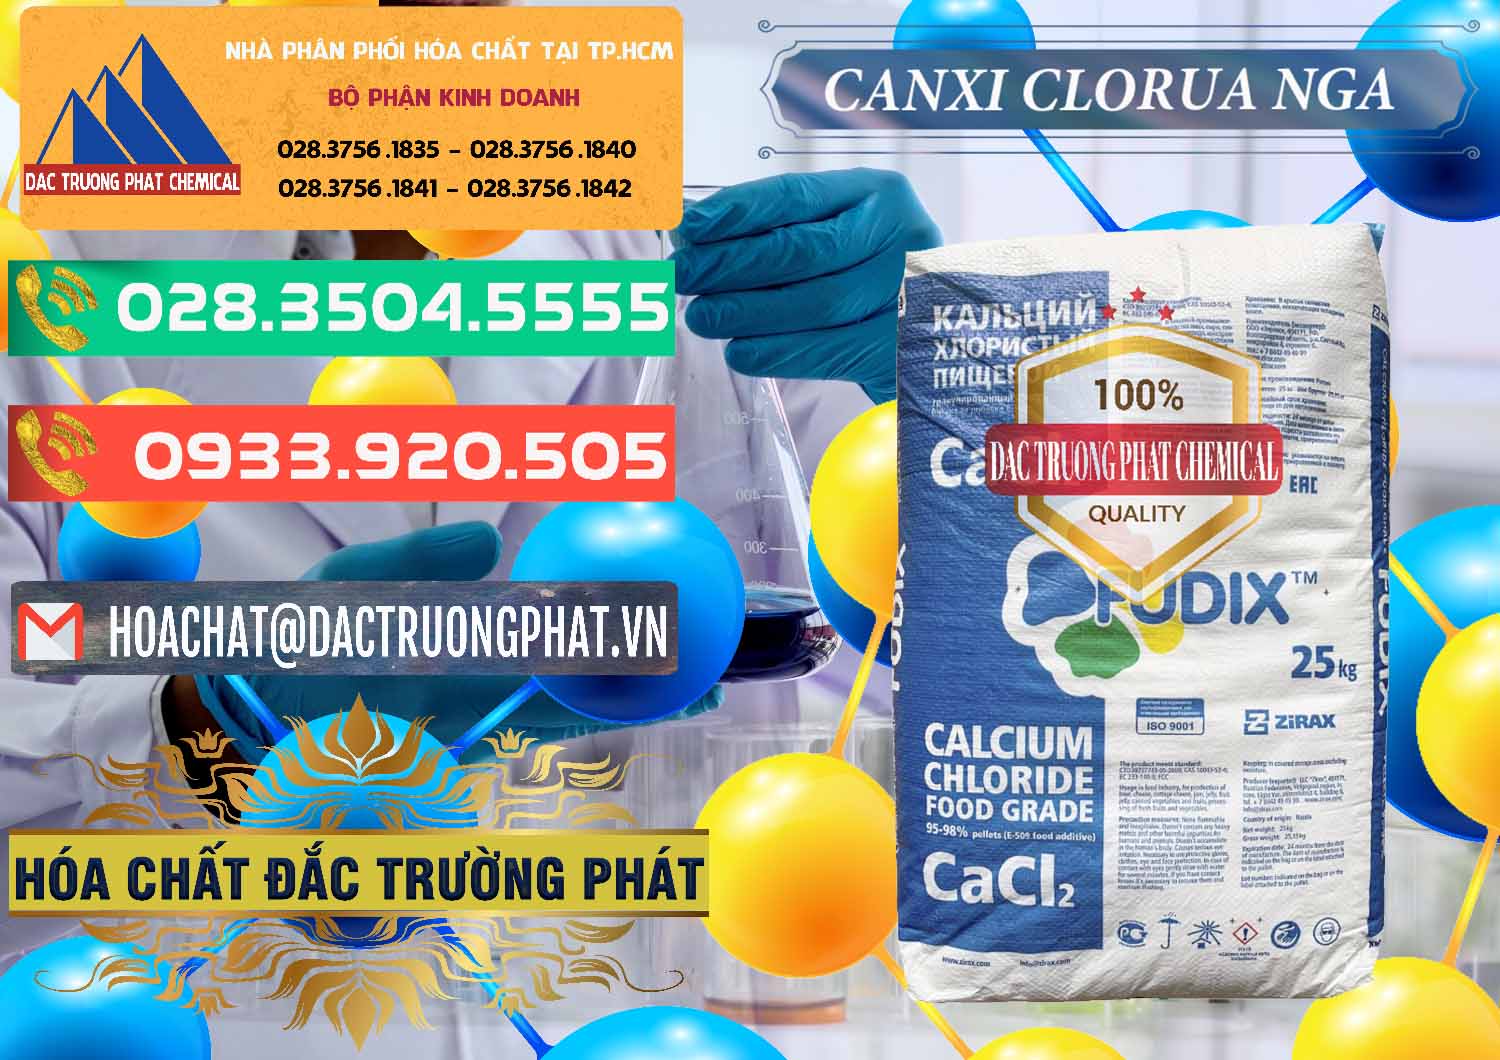 Cty cung cấp & bán CaCl2 – Canxi Clorua Nga Russia - 0430 - Chuyên cung cấp & kinh doanh hóa chất tại TP.HCM - congtyhoachat.com.vn